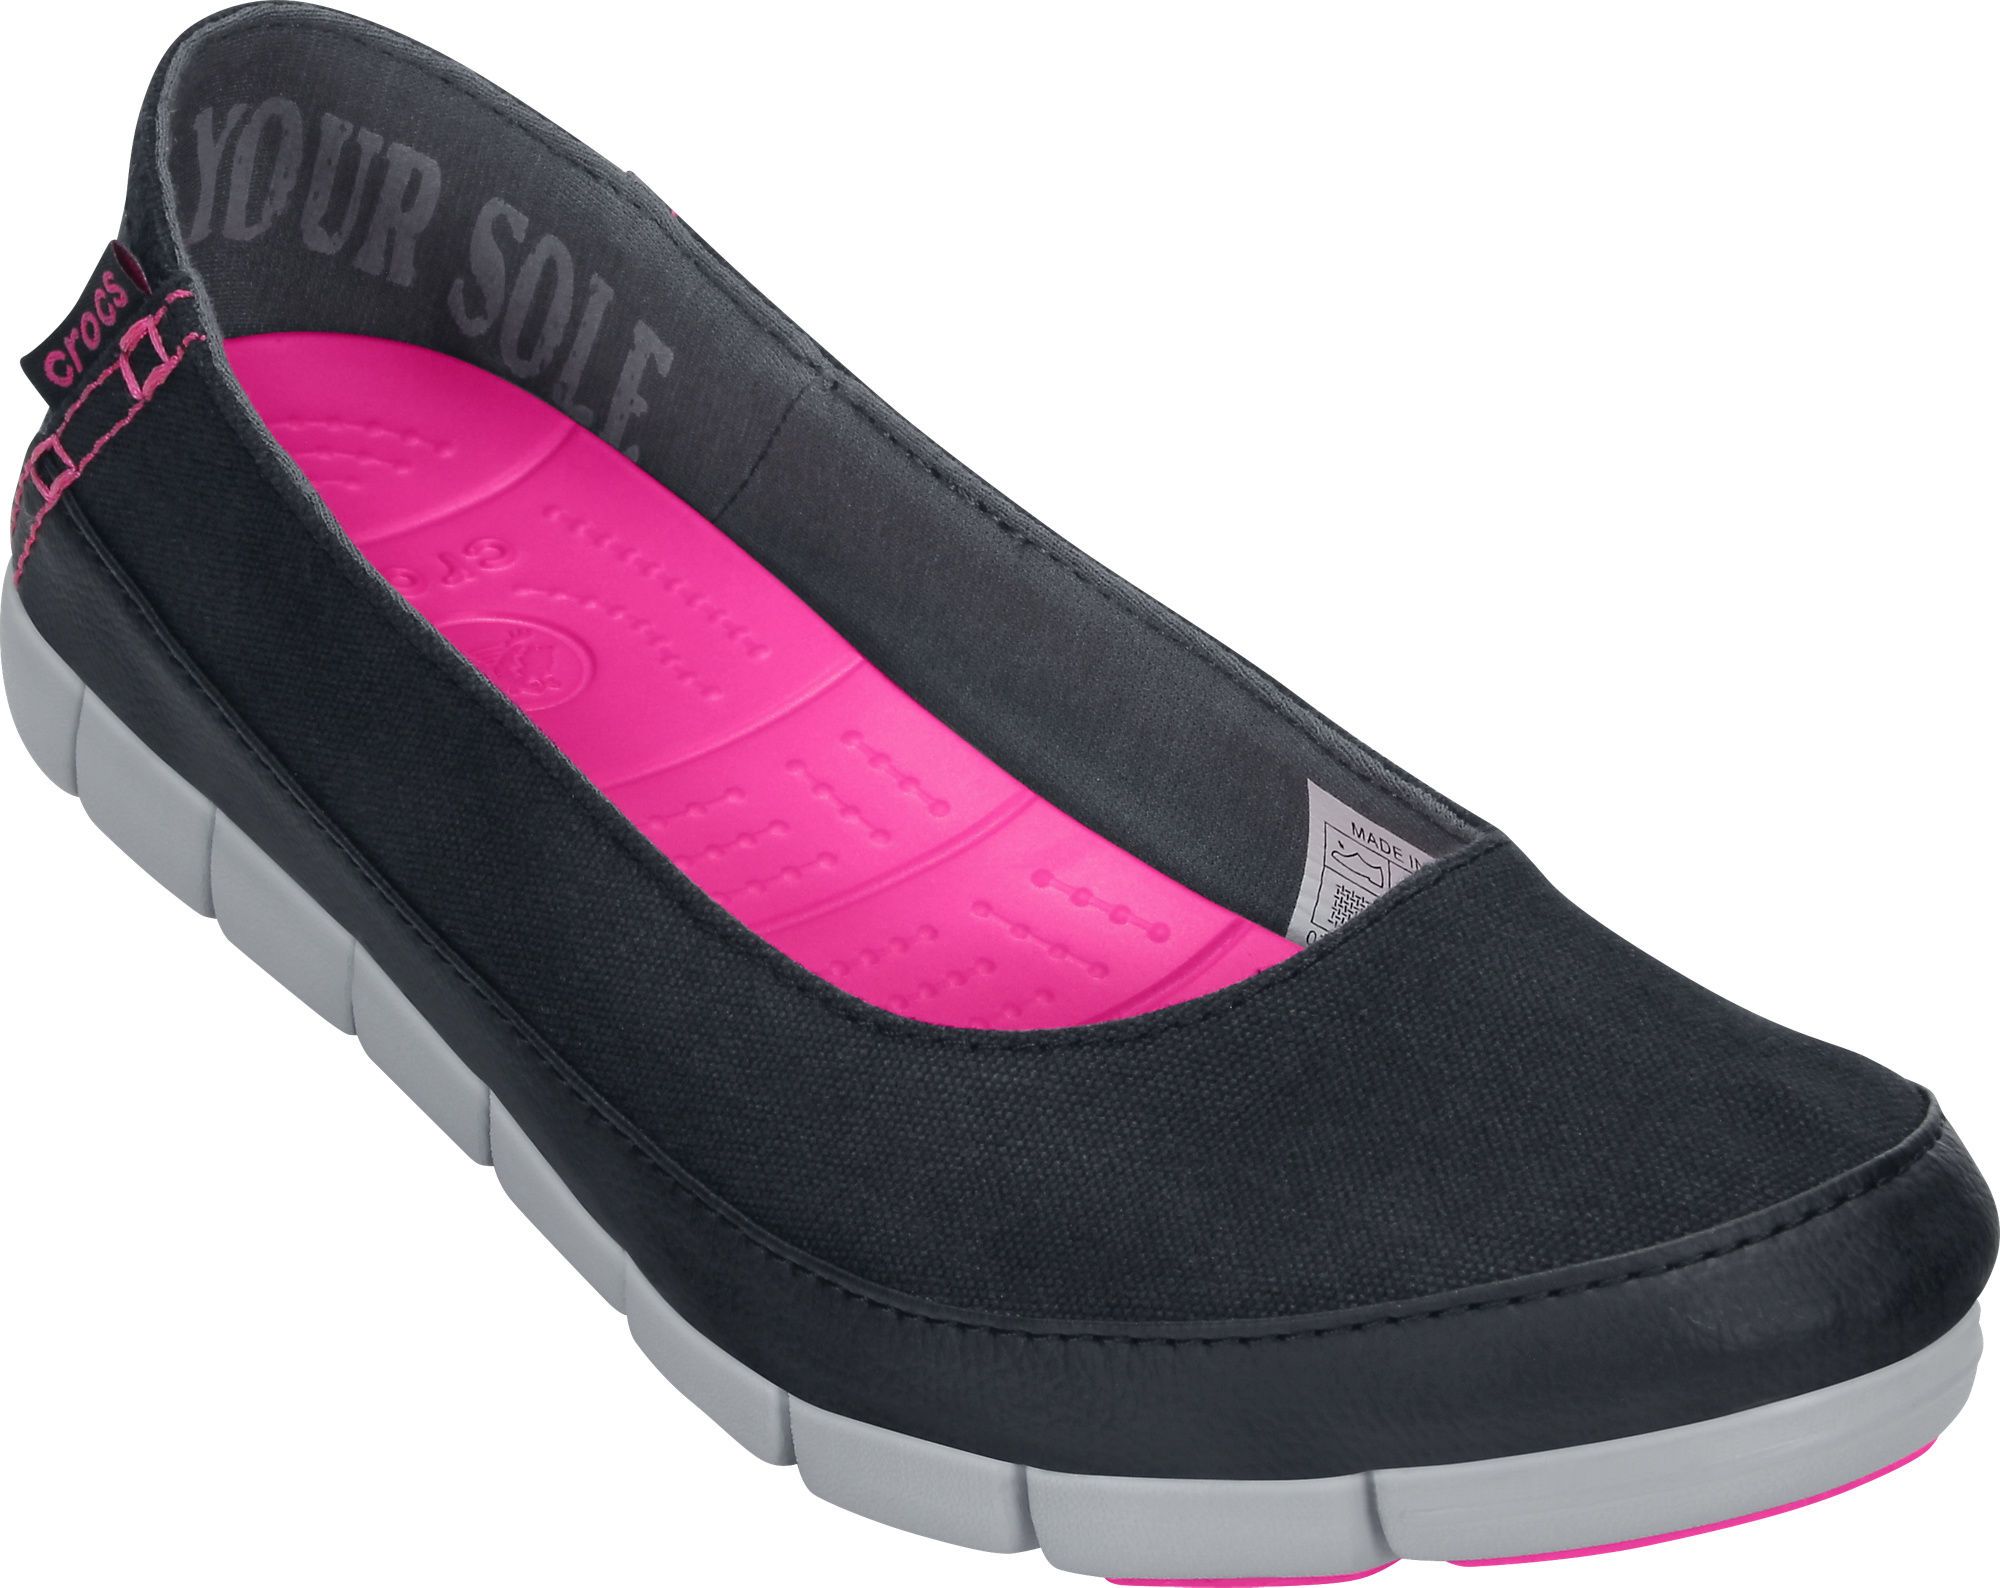  Crocs - Stretch Sole Giày Búp Bê Flat W Black/Light grey Nữ 